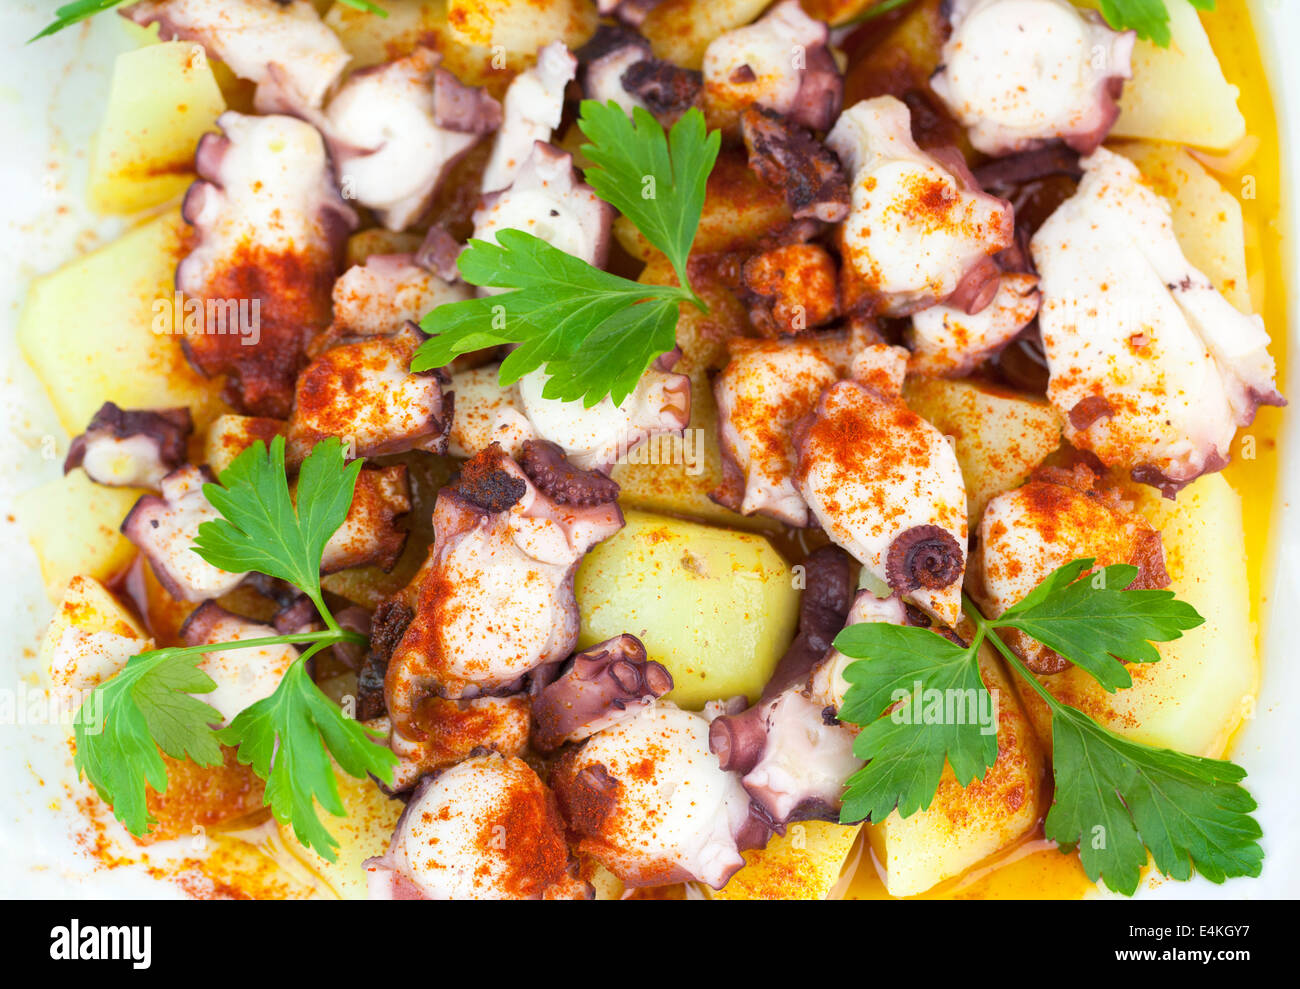 Polbo a Feira (Octopus), Juste un style traditionnel espagnol galicien plat préparé avec des pommes de terre (cachelos), gros sel, paprika Banque D'Images